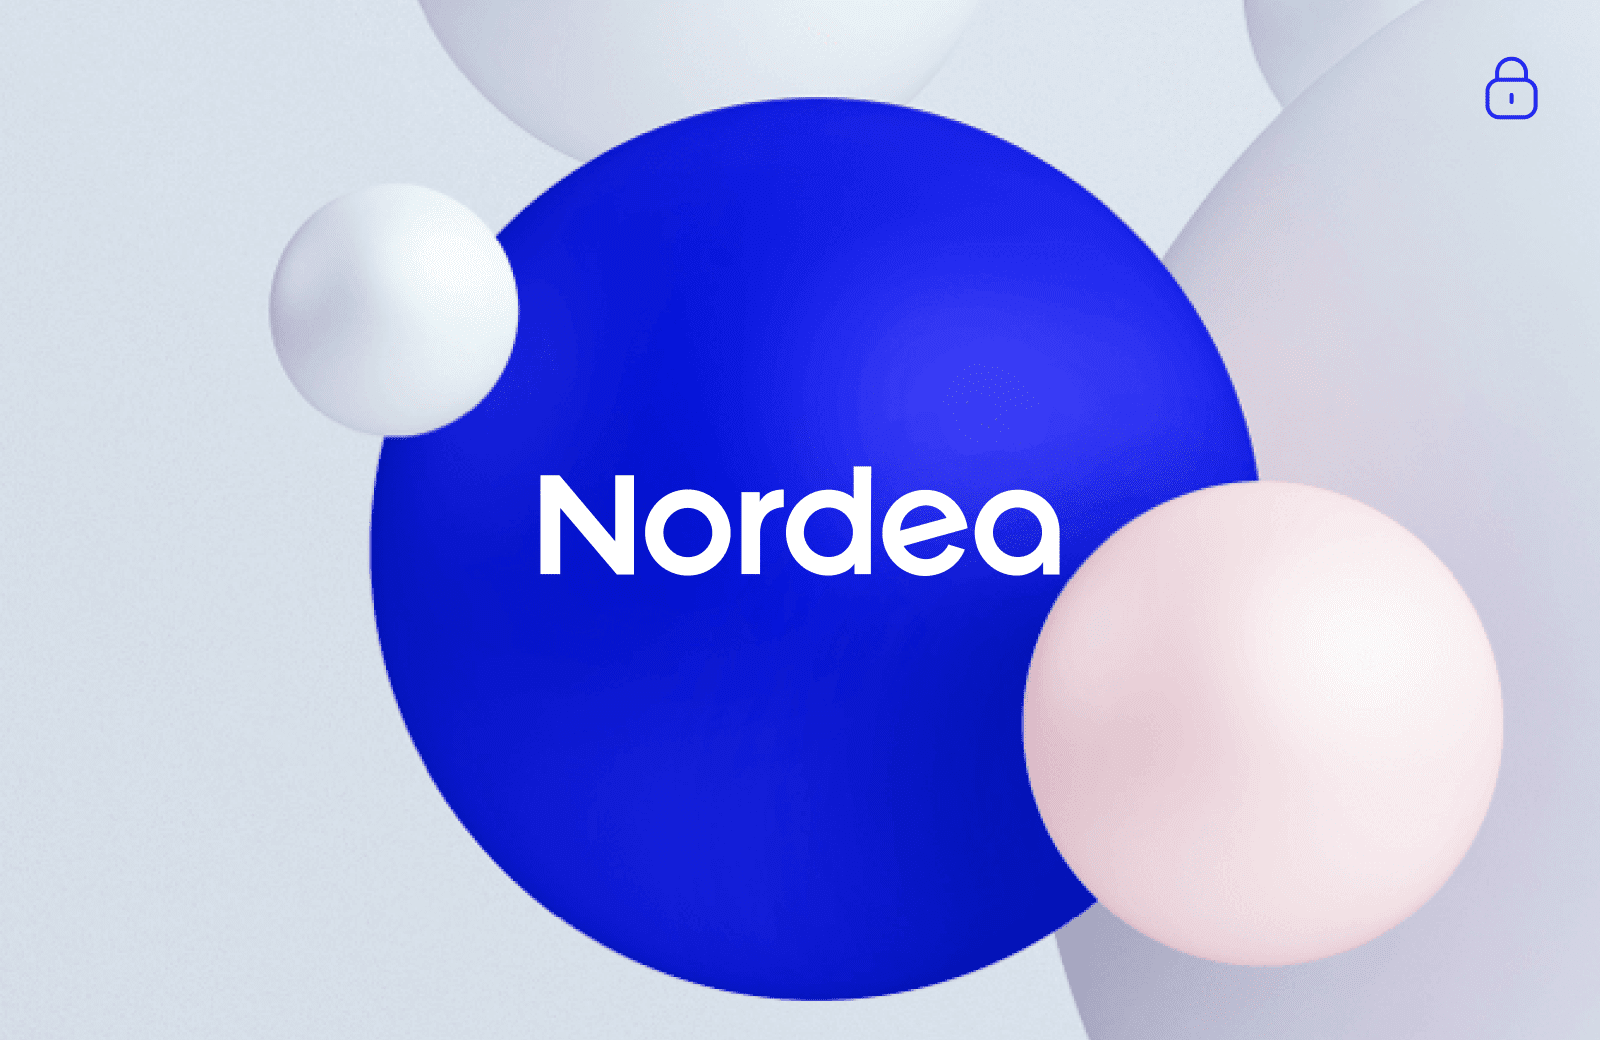 Nordea — Making it flow